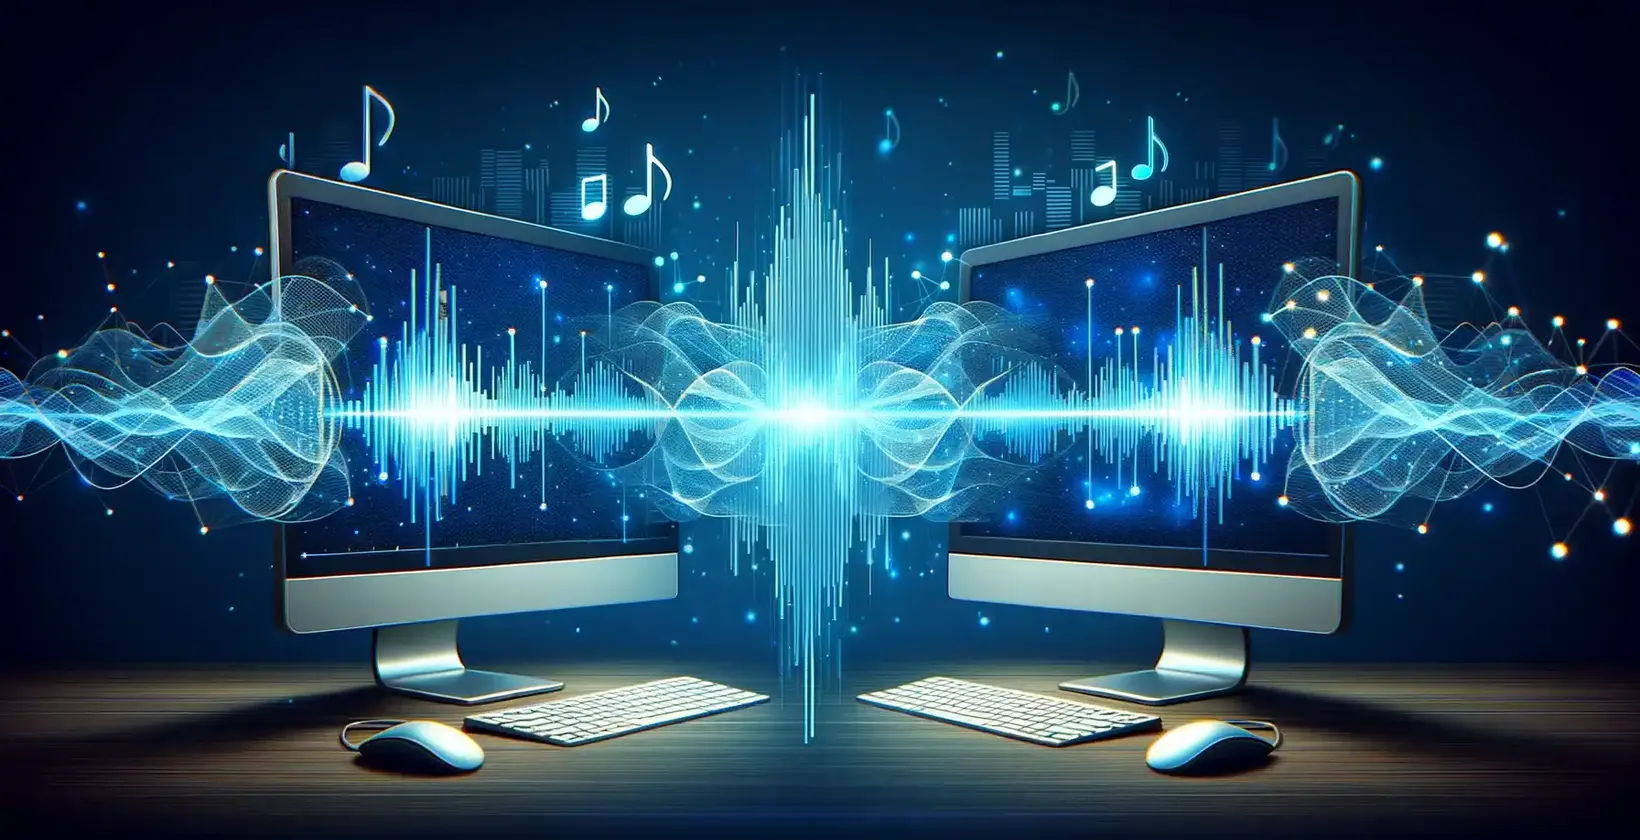 Два компьютерных экрана, на которых отображаются музыкальные ноты и звуковые волны, иллюстрируют визуализацию звука.